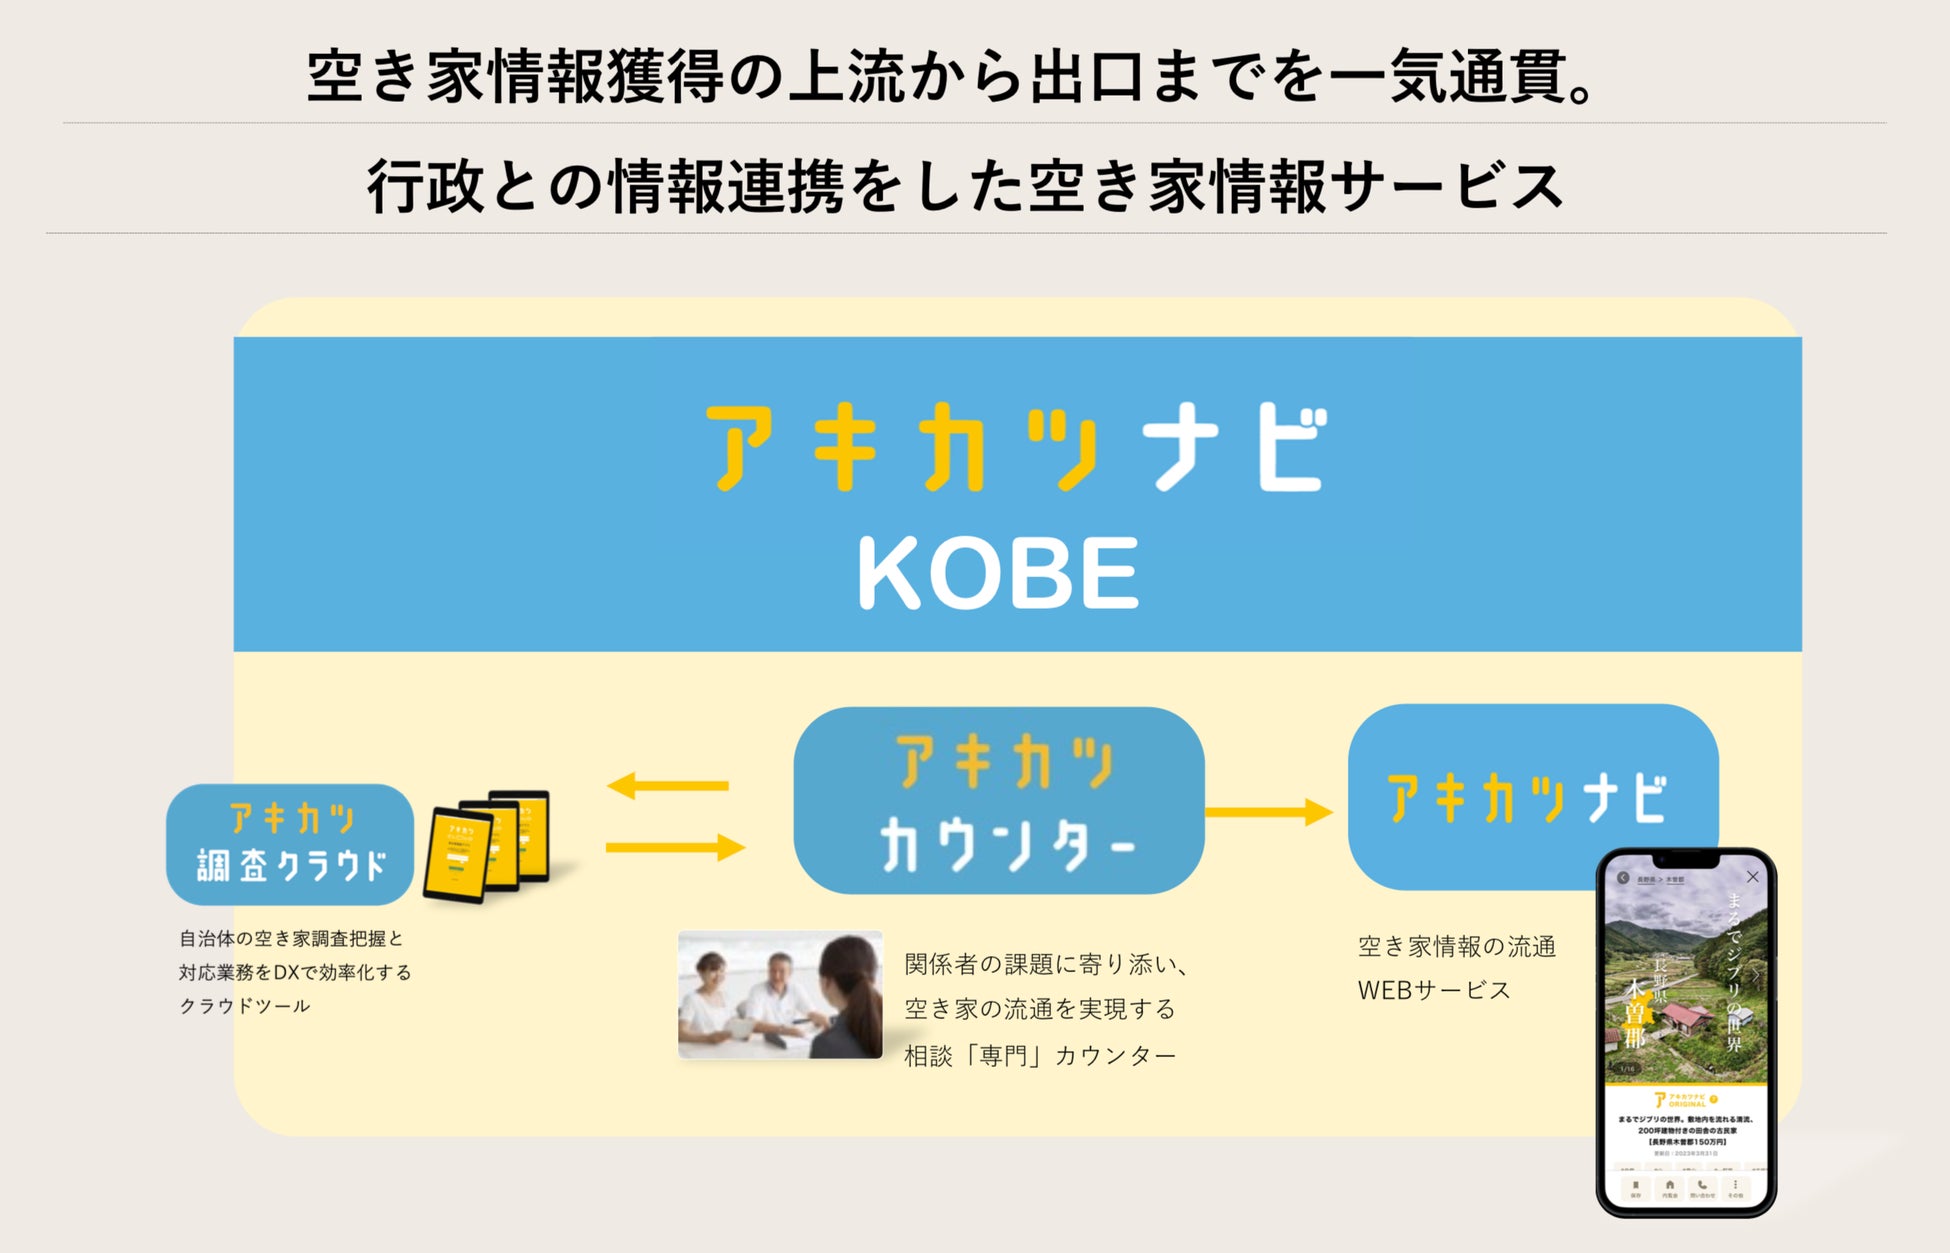 神戸市と空き家活用株式会社　空き家対策に関する連携協定を締結。相談窓口の「アキカツカウンター」と空き家情報流通サービスの「アキカツナビ」を神戸市にて事業展開へのサブ画像2